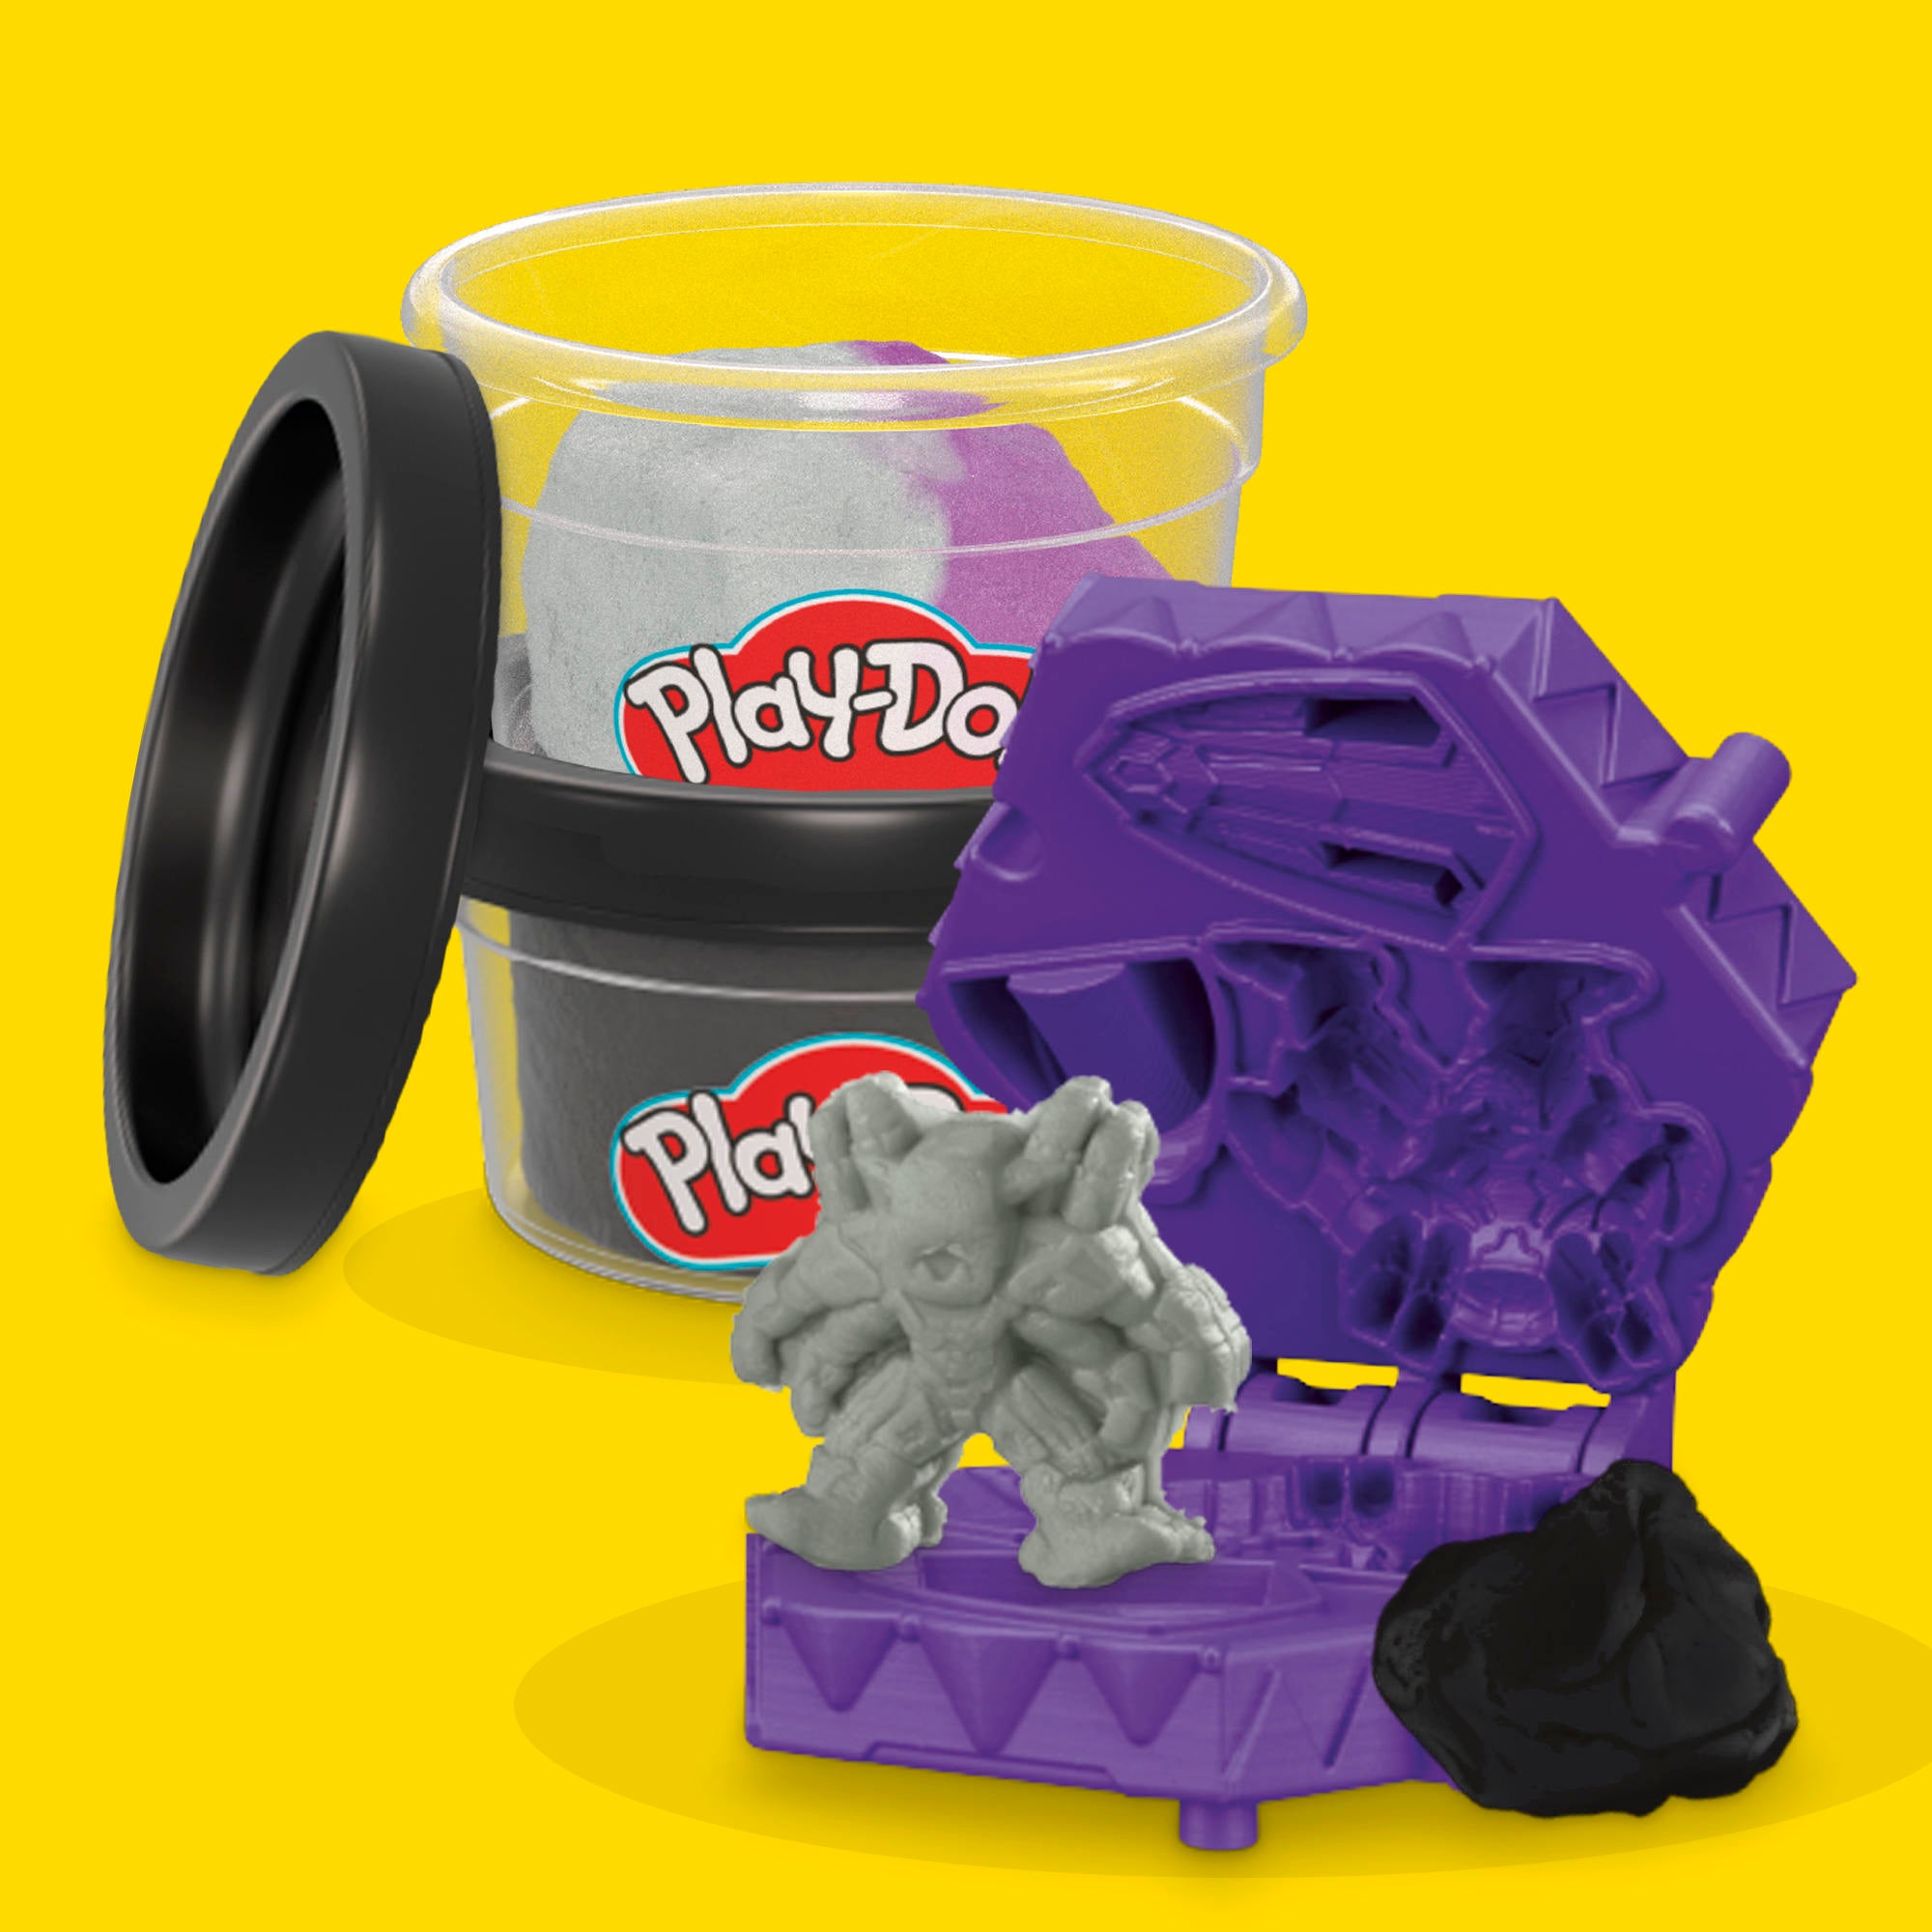 Play-Doh и Marvel запускают новую линейку фигурок и игровых наборов с участием Человека-паука, Халка, Венома и других персонажей (эксклюзивно)